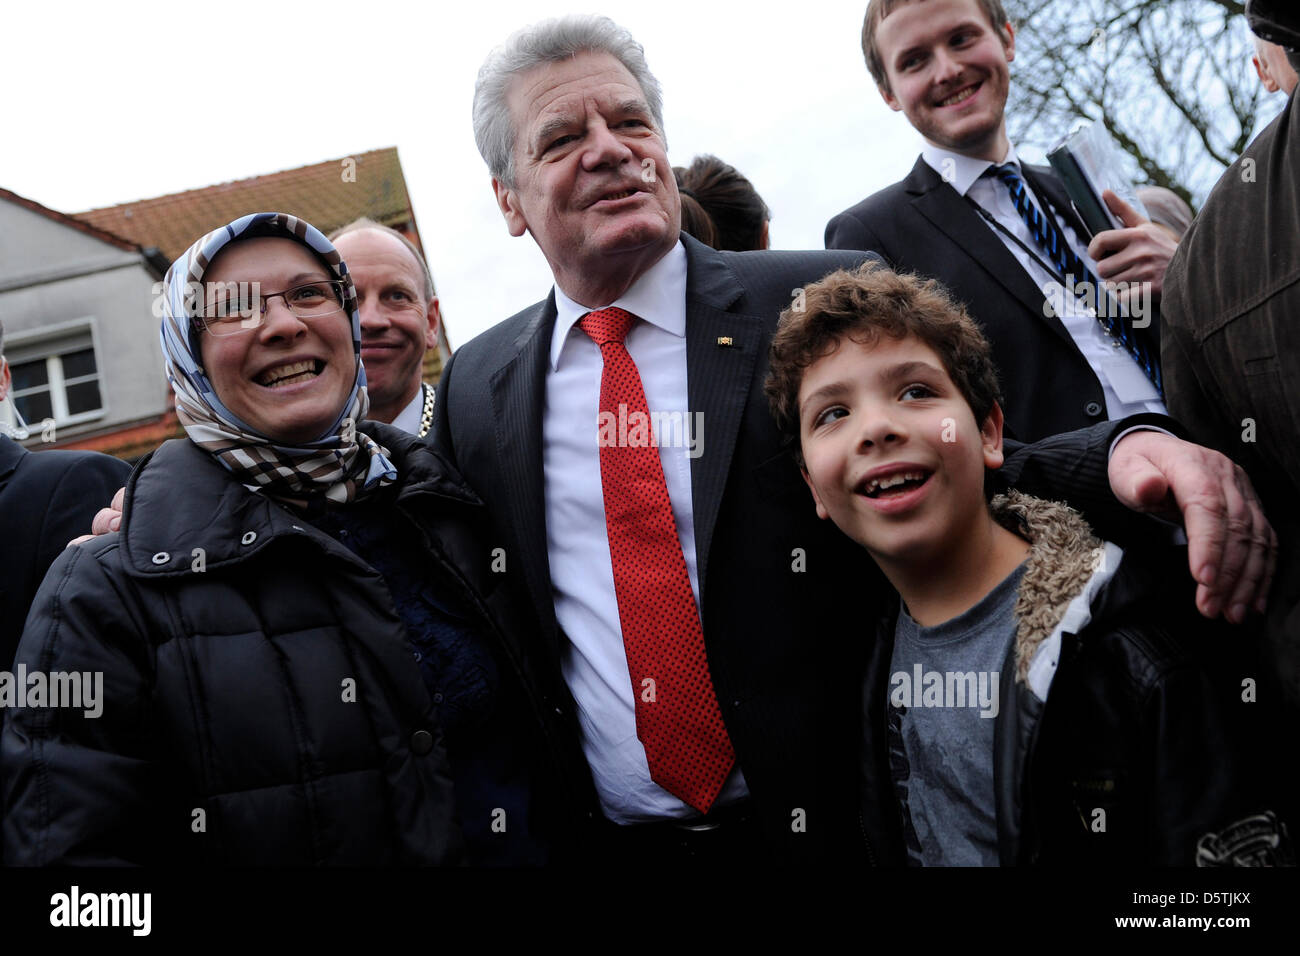 Le président fédéral allemand Joachim Gauck (c) parle aux passants au cours de sa première visite à l'état de Rhénanie du Nord-Westphalie à Bottrop, Allemagne, 26 novembre 2012. Photo : Marius Becker Banque D'Images